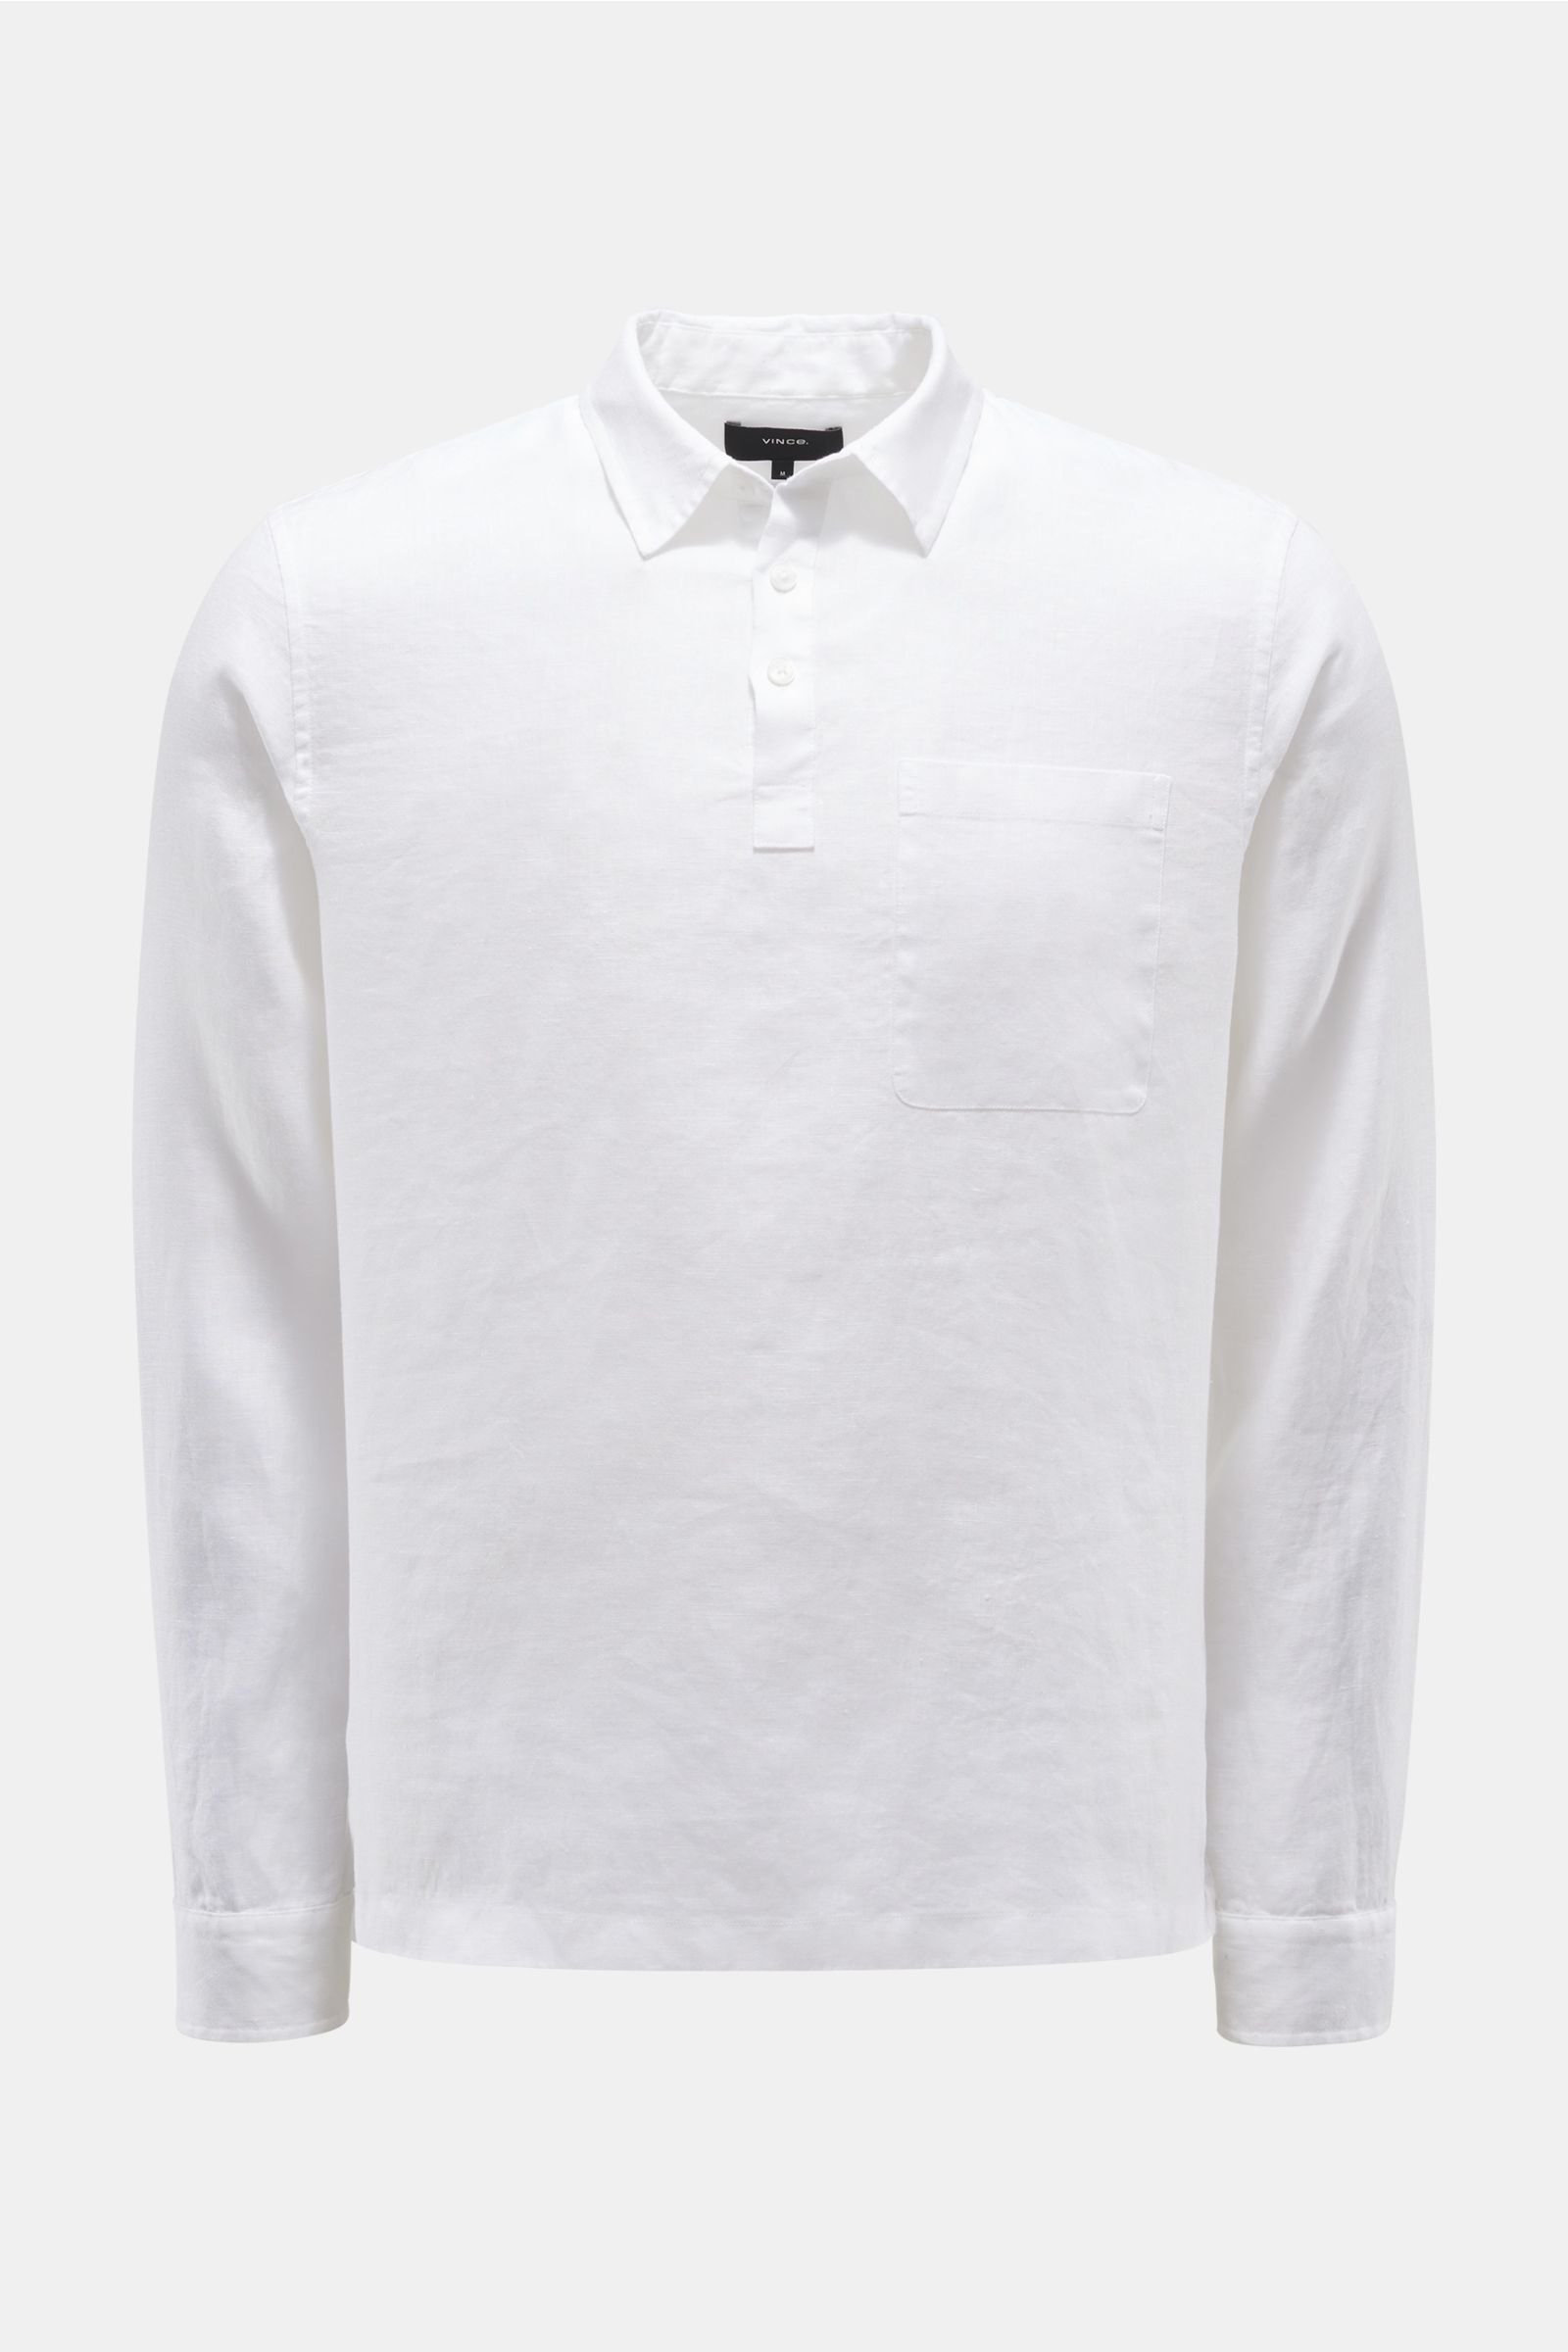 Leinen-Popover-Hemd schmaler Kragen weiß